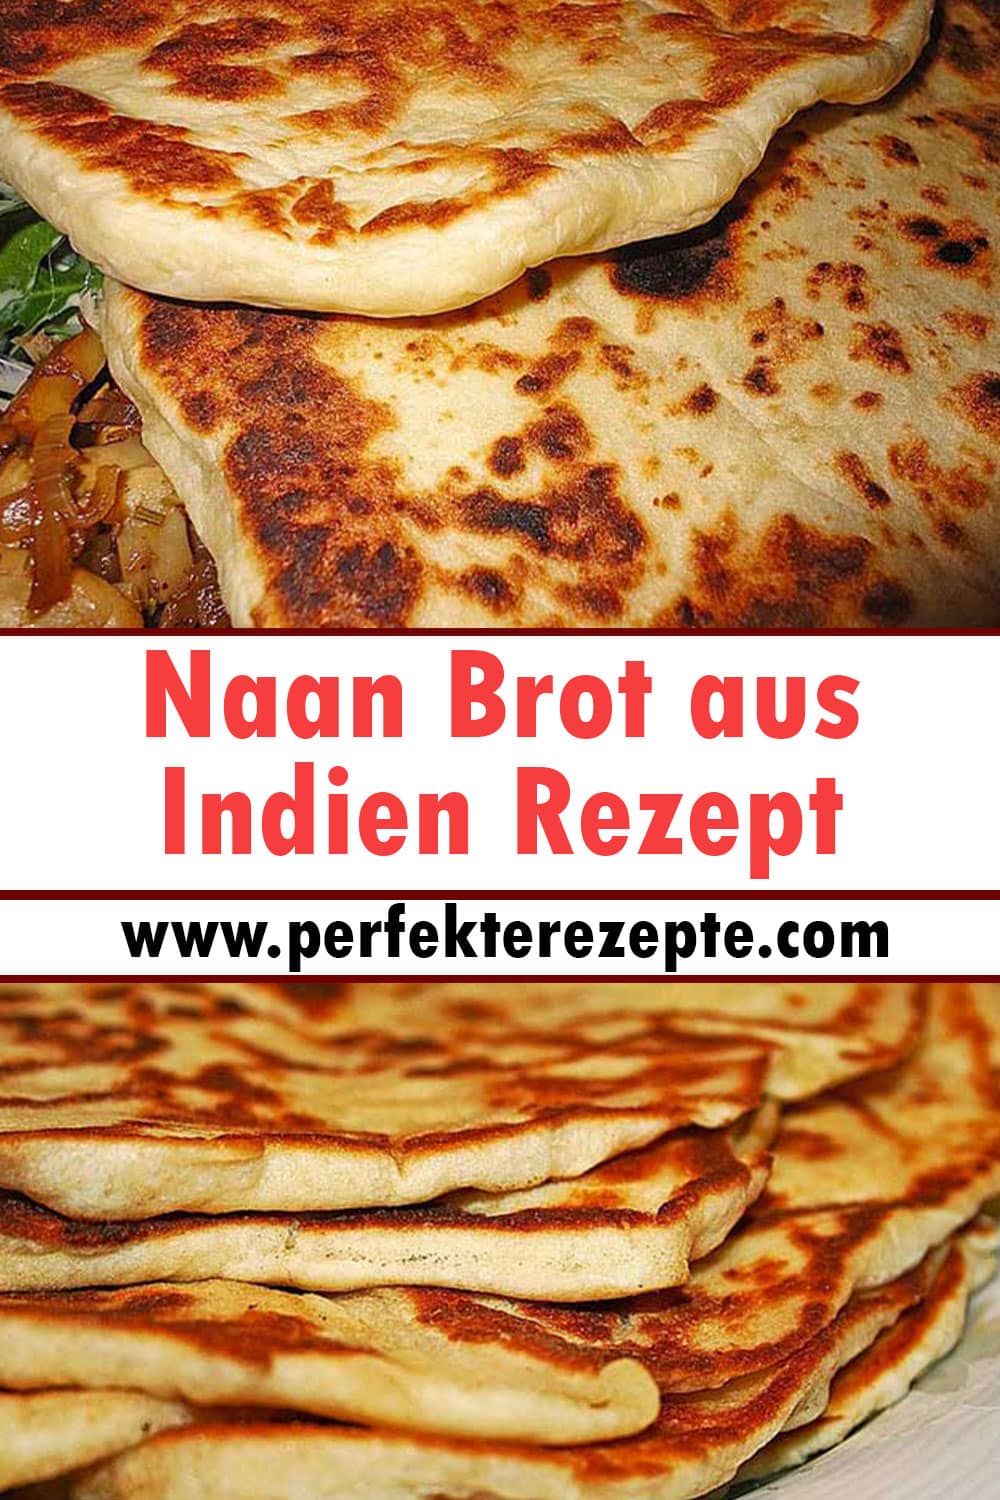 Naan Brot aus Indien Rezept